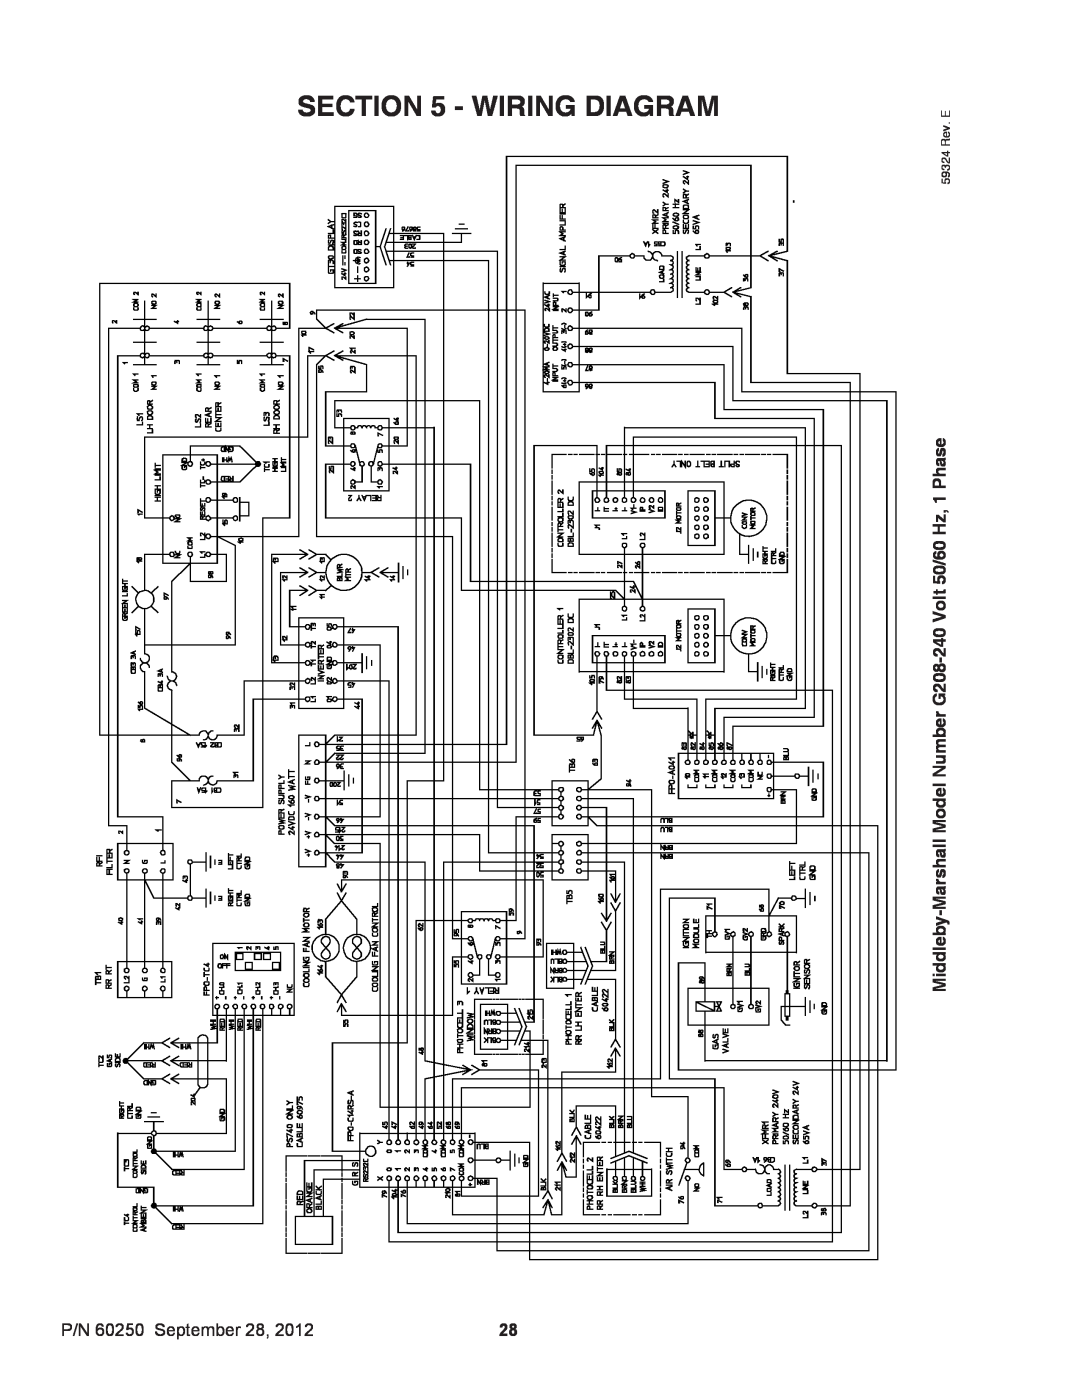 Middleby Marshall Wiring Diagram, P/N 60250 September, Middleby-Marshall Model Number G208-240 Volt 50/60 Hz, 1 Phase 